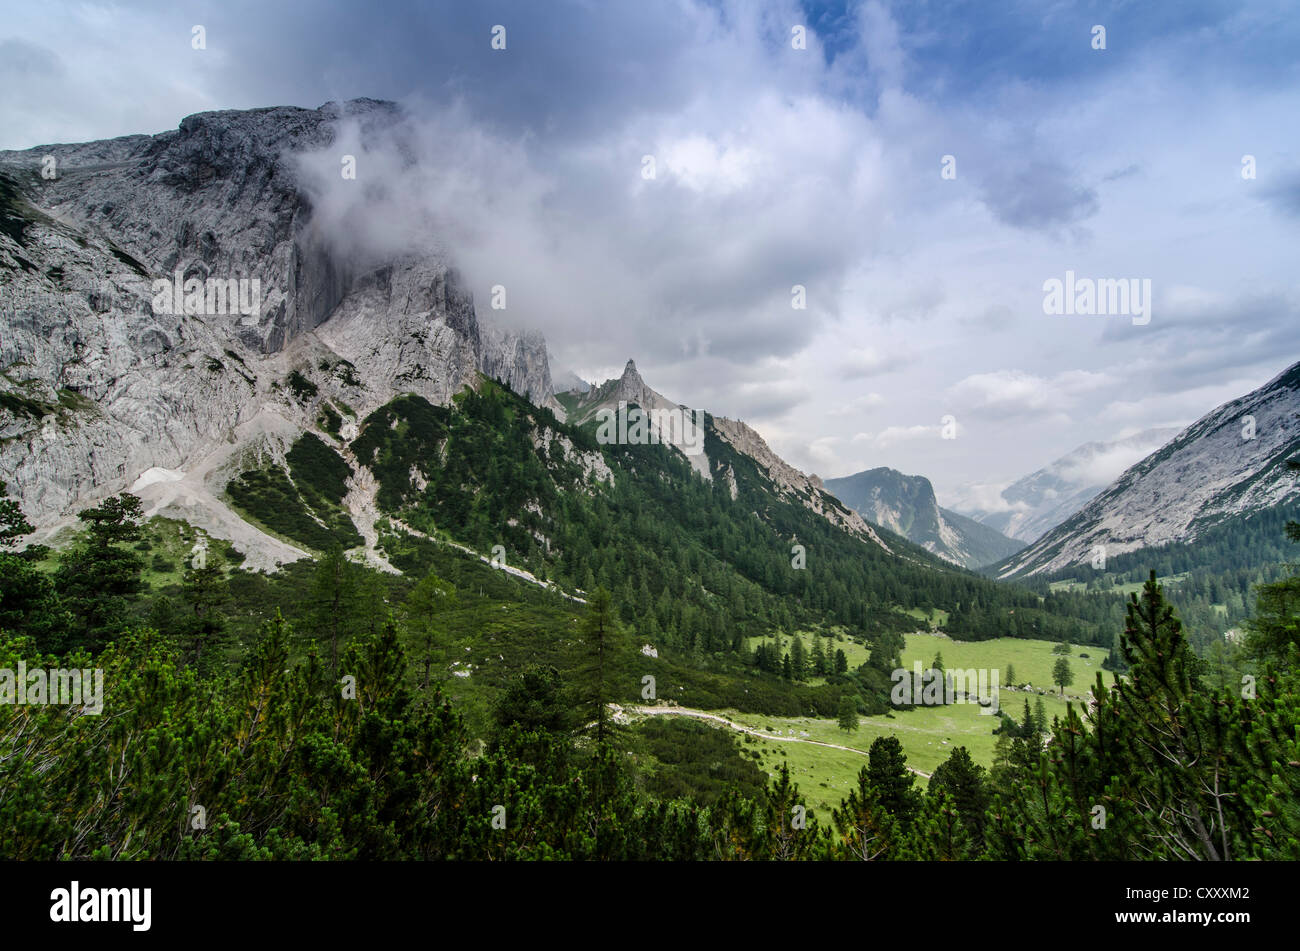 Hinterautal valley, le Parc National des Montagnes du Karwendel, Tyrol, Autriche, Europe Banque D'Images